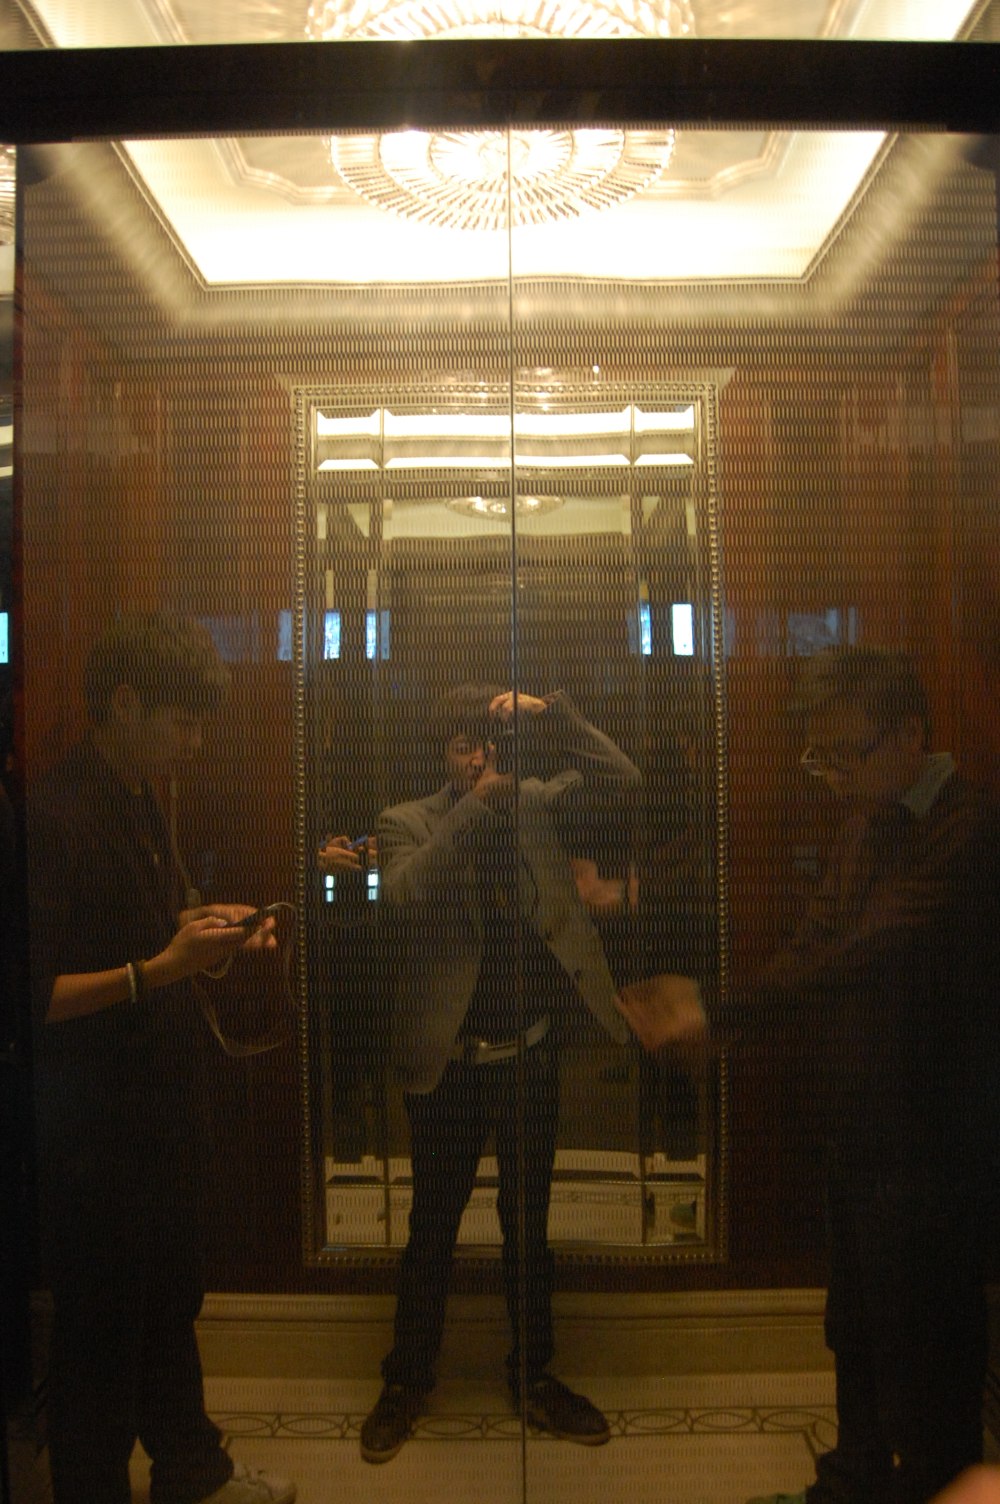 上海华尔道夫酒店(The Waldorf Astoria OnTheBund)(HBA)10.9第10页更新_DSC_0609.JPG